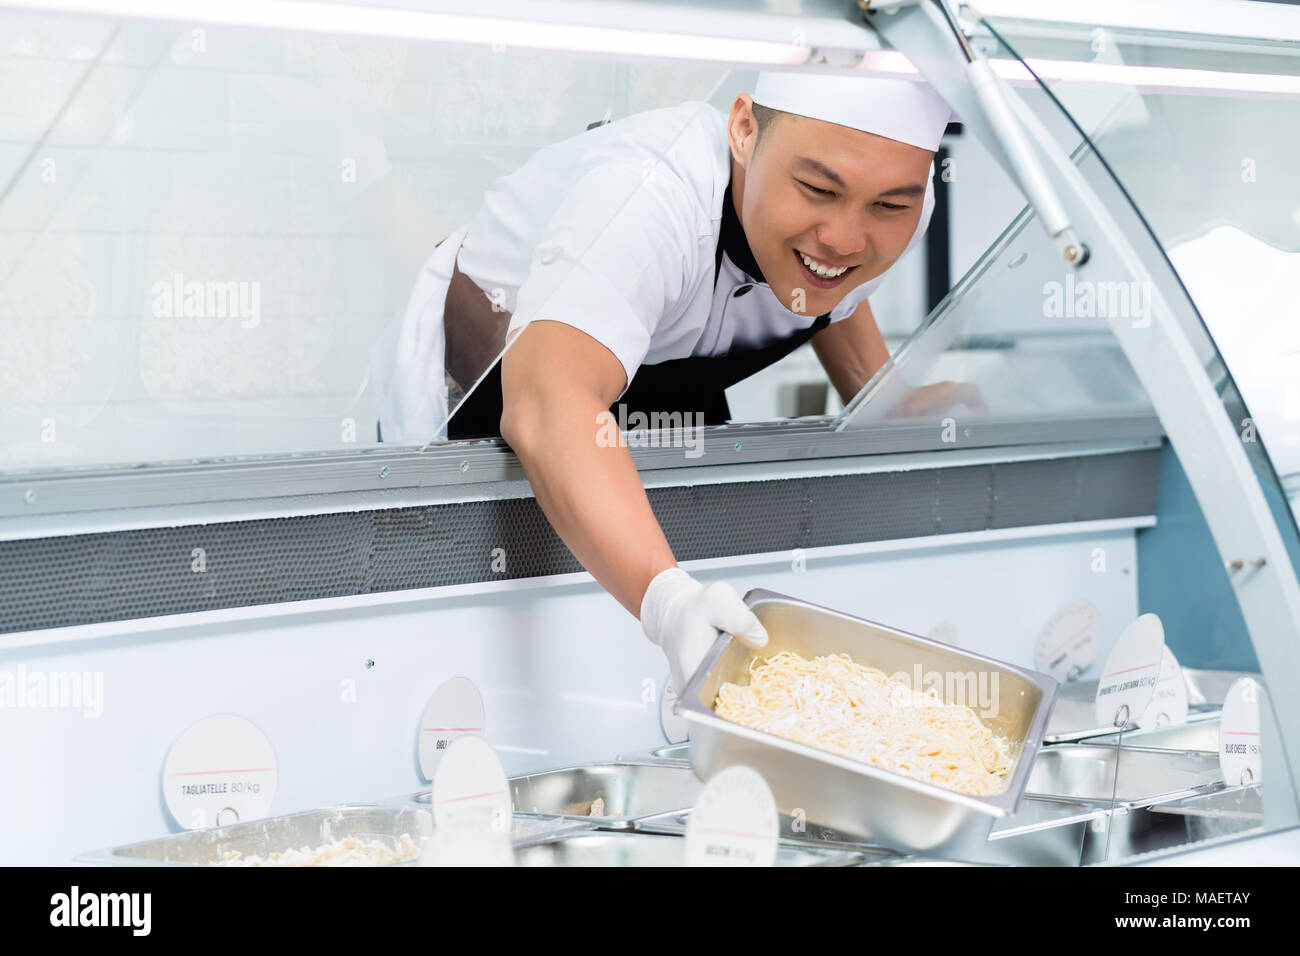 Sorridente chef asiatico il riempimento di un banco espositore Foto Stock